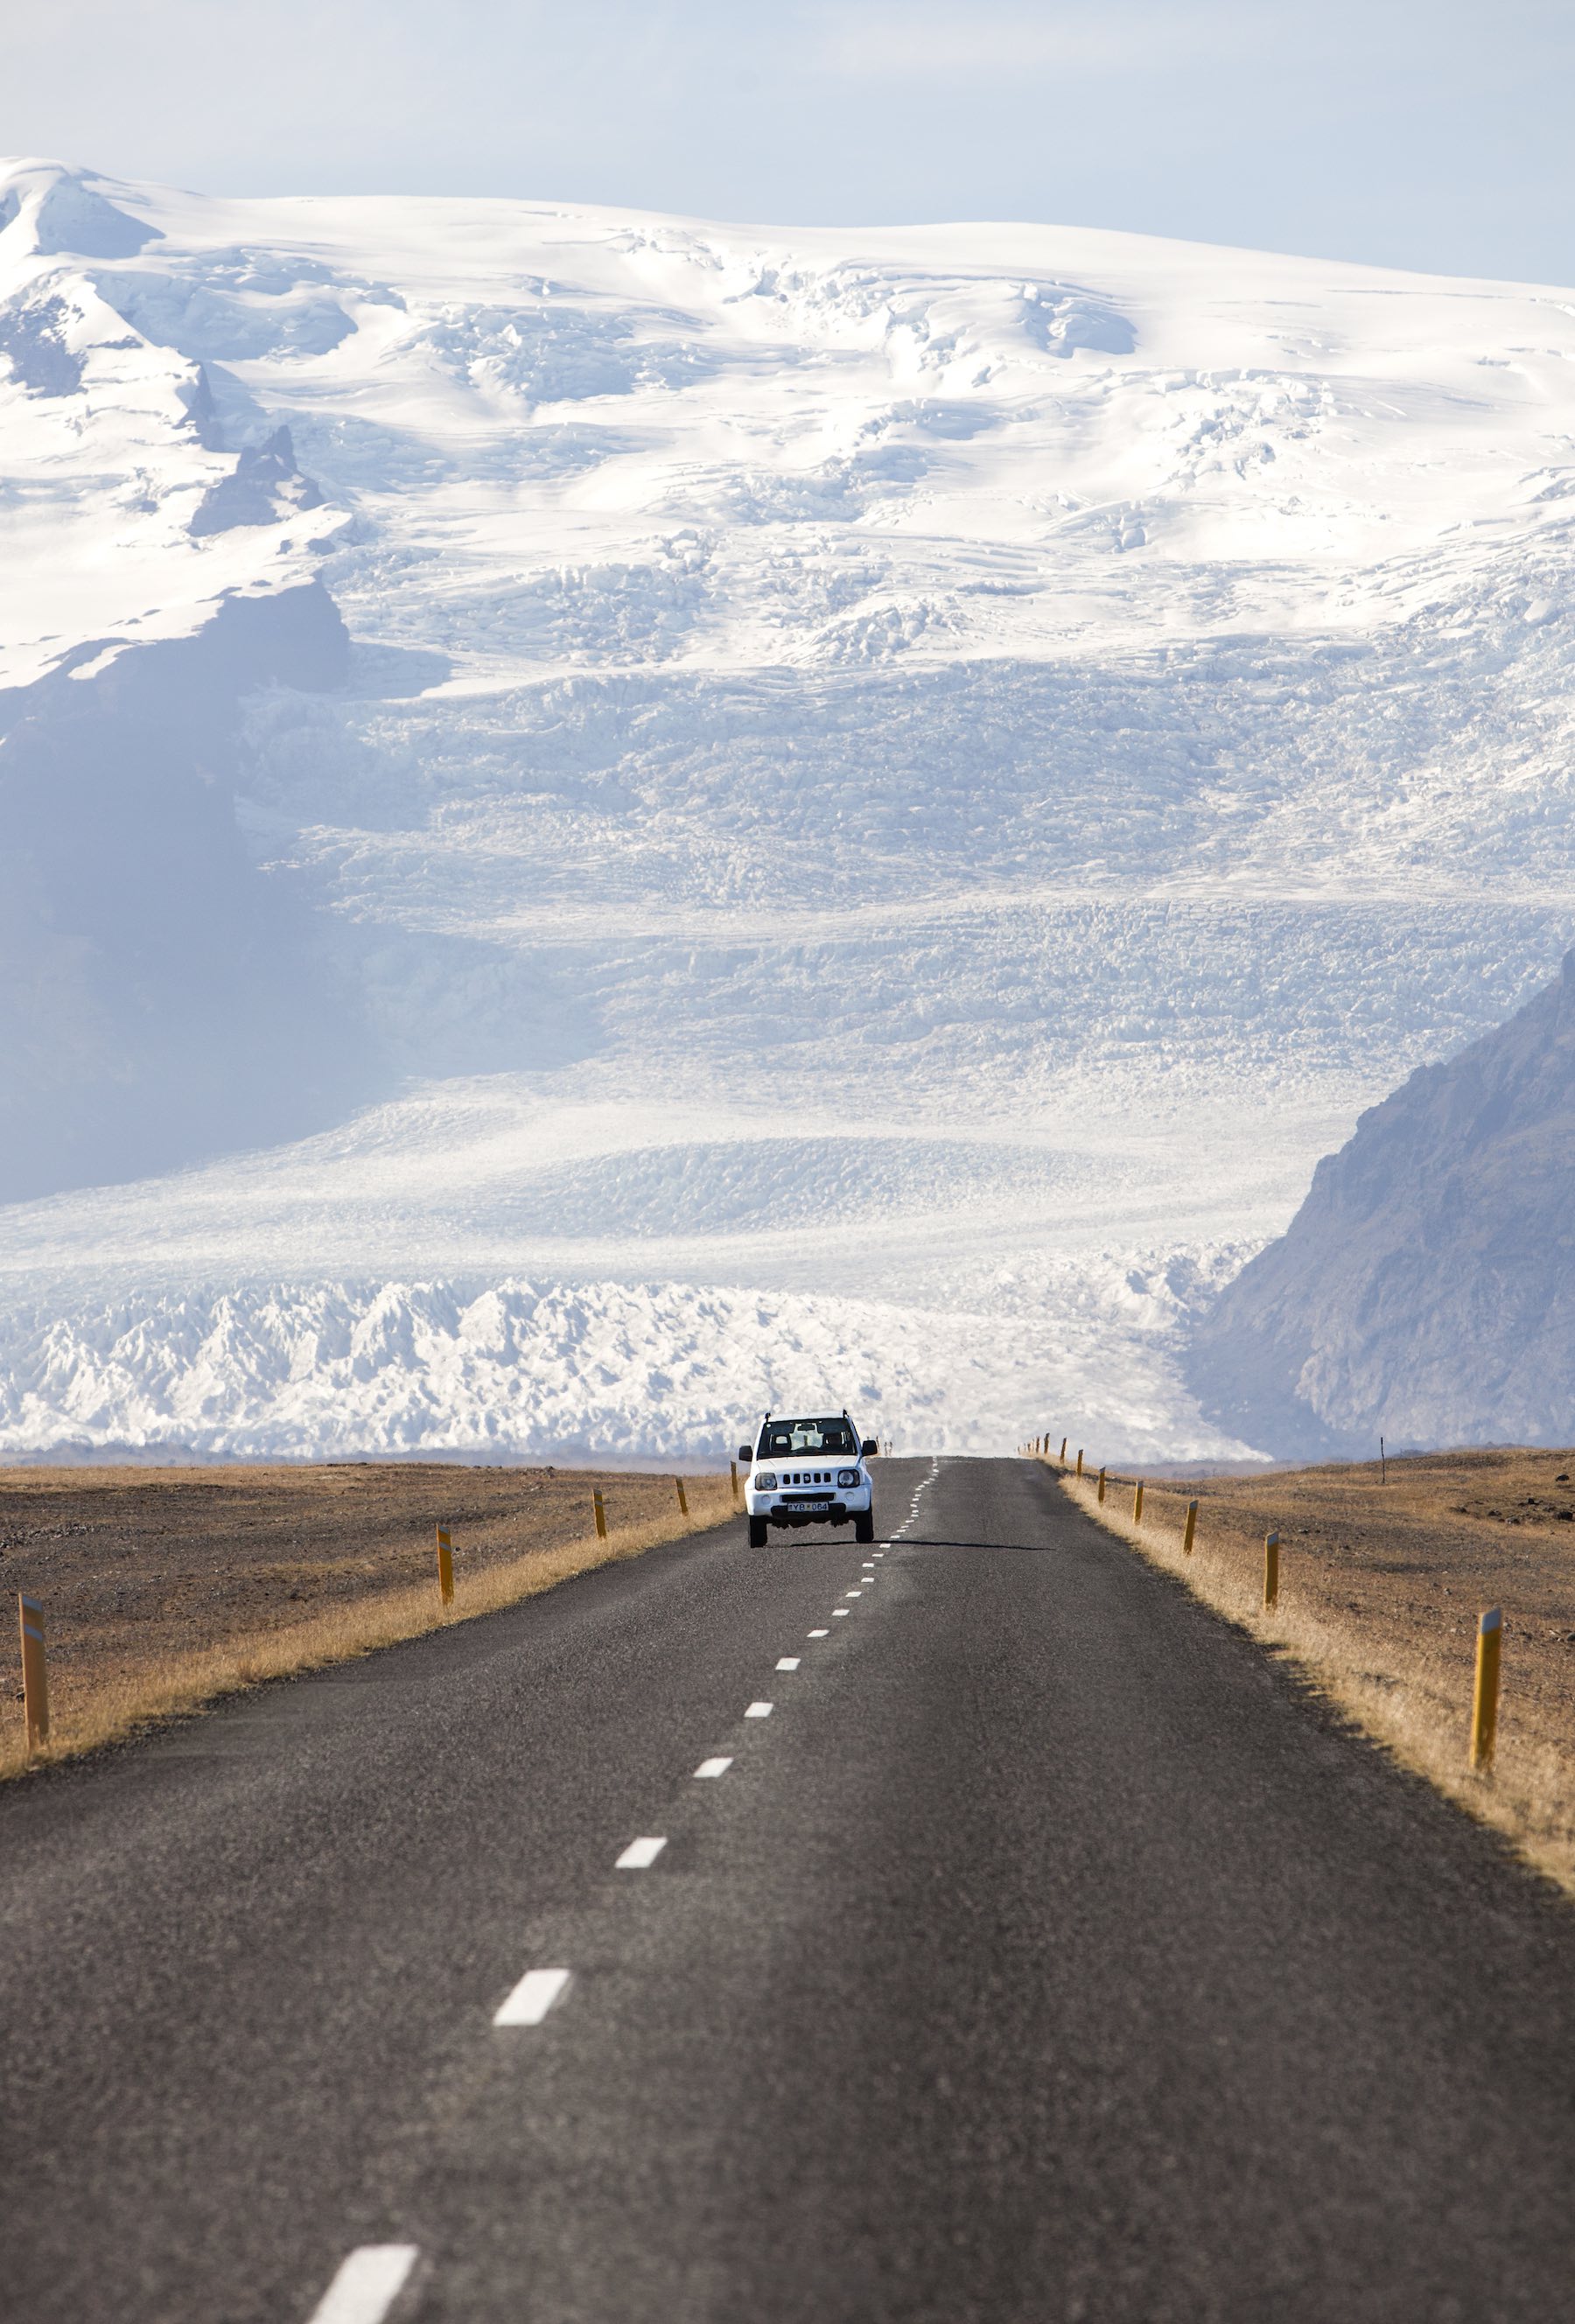 Islannin ykköstie on päällystetty ja hyväkuntoinen, mutta kapea ja hidaskulkuinen. Maksiminopeus on 90 km/h. Kesäaikaan: varo lampaita! Kuva: Björgvin Hilmarsson